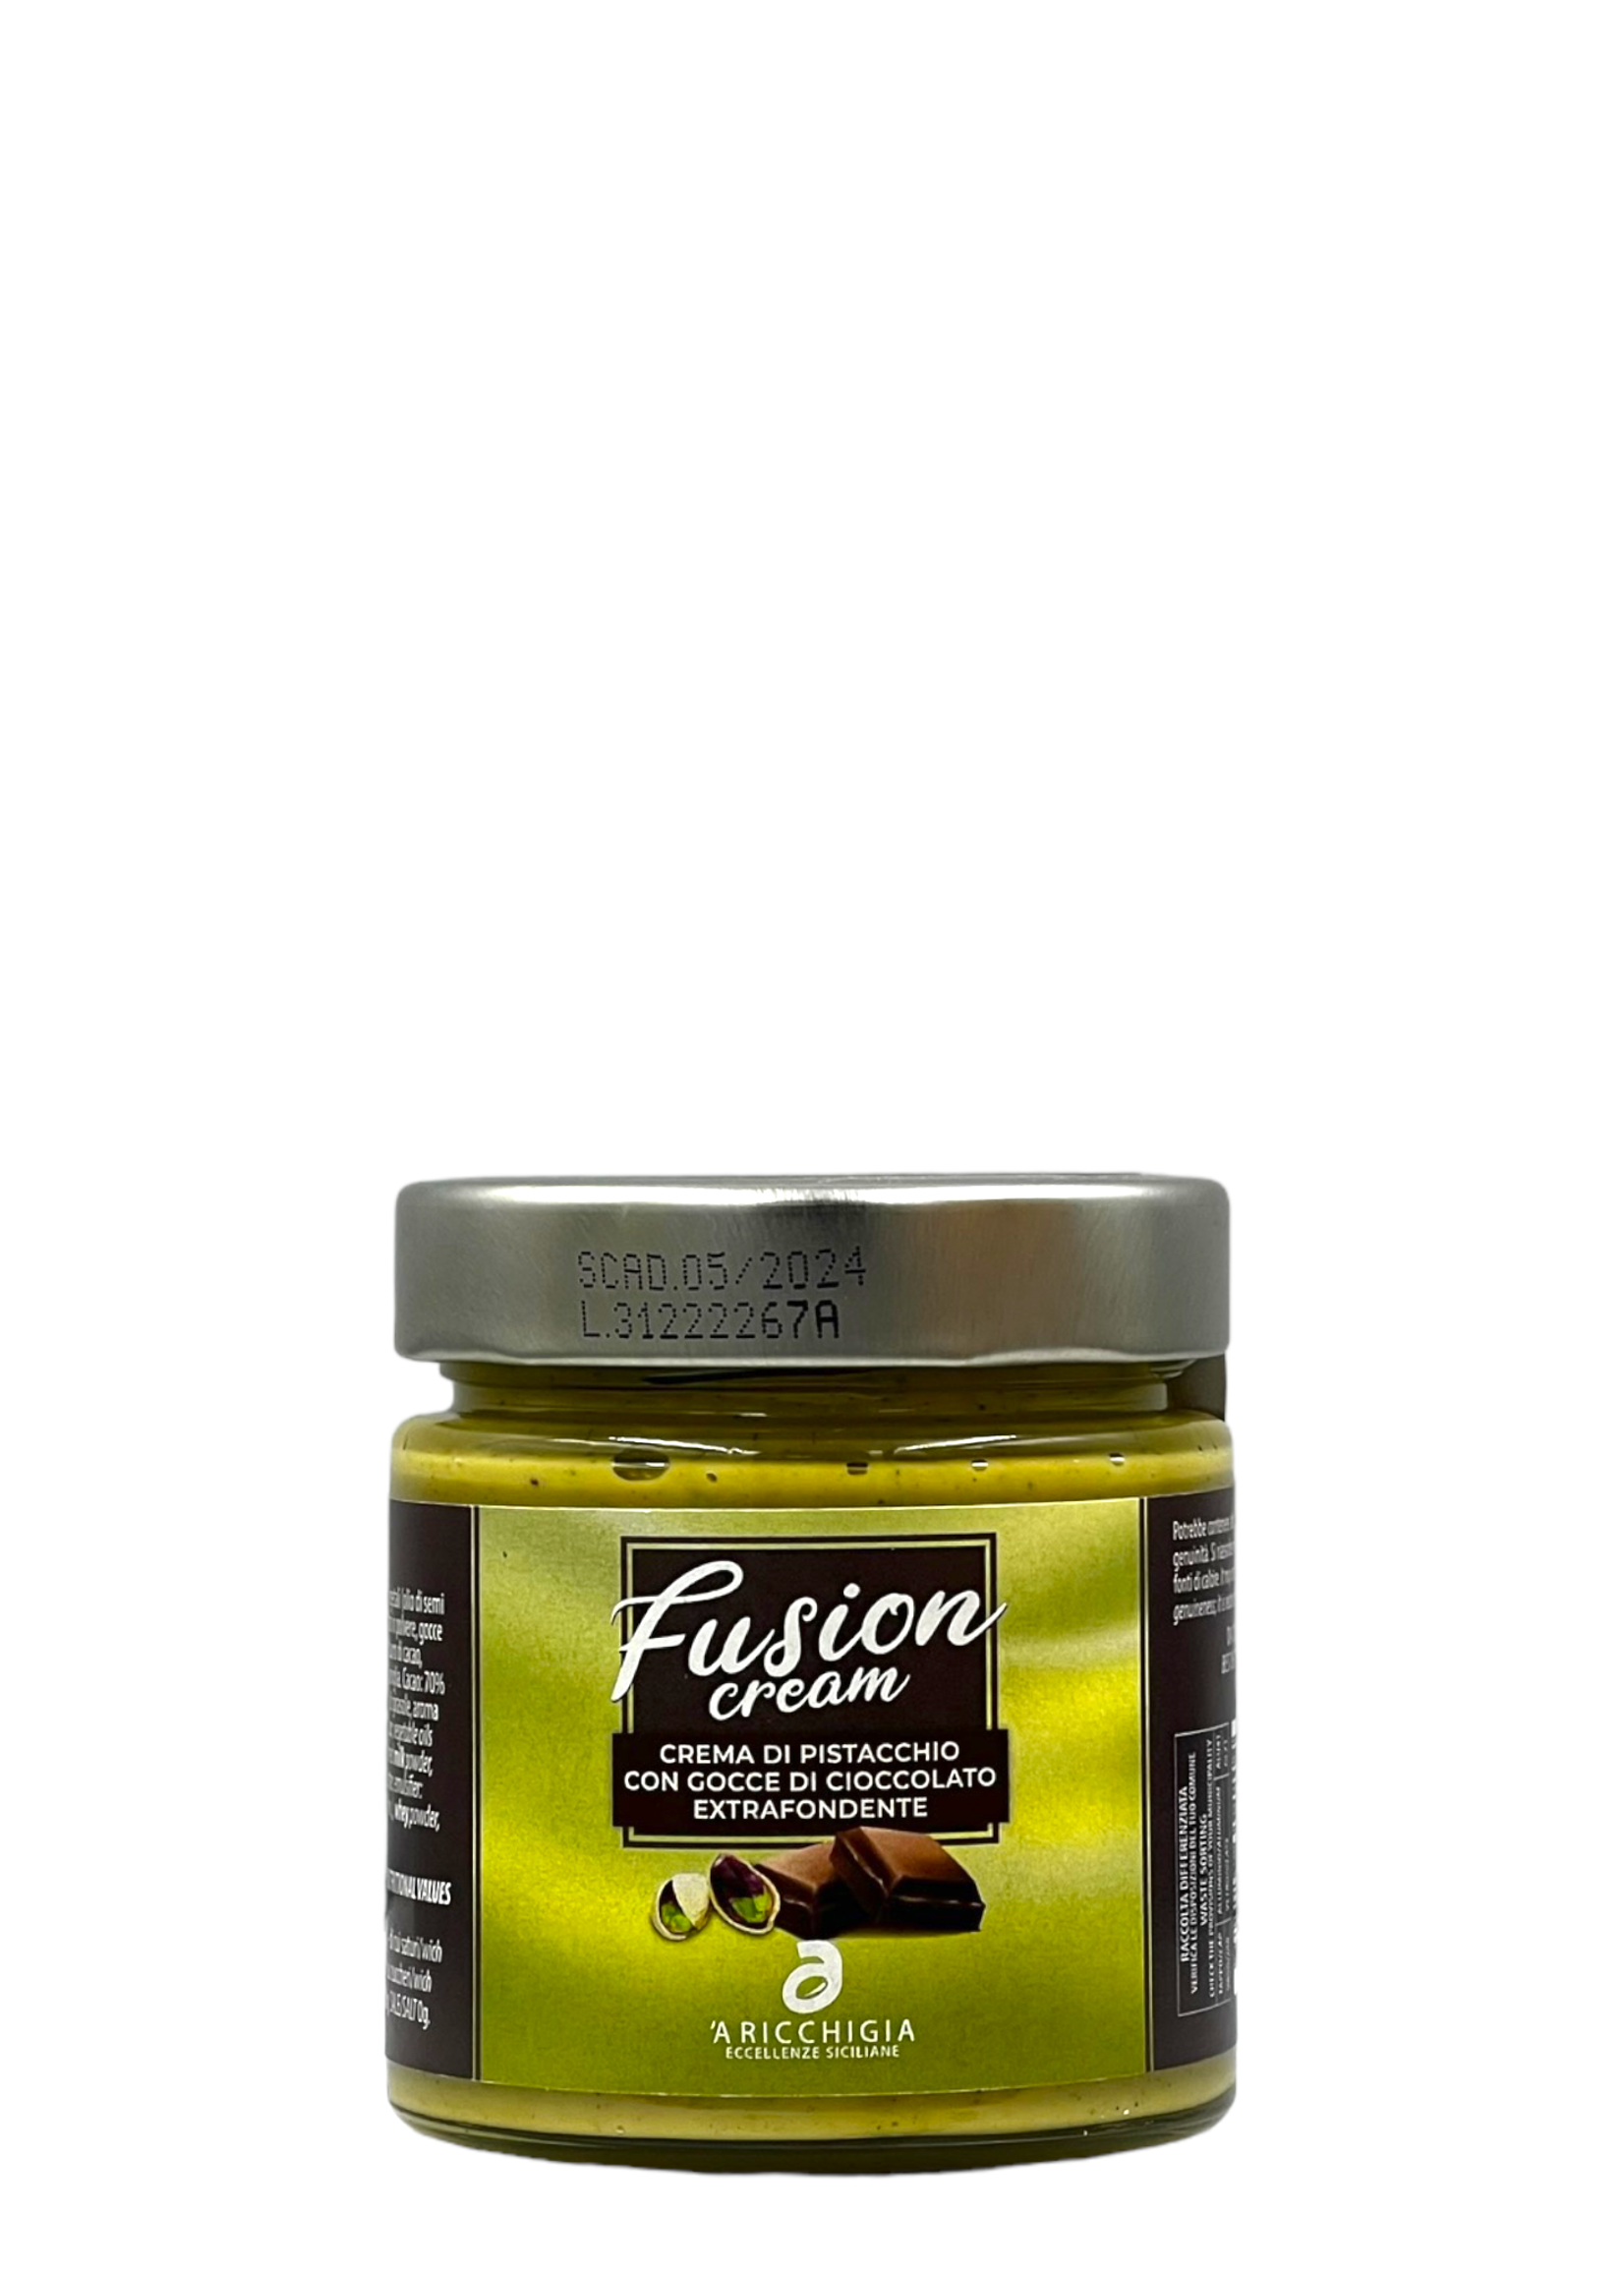 Fusion Crema di pistacchio di Bronte con gocce di cioccolato extrafondente 190g - A'Ricchigia